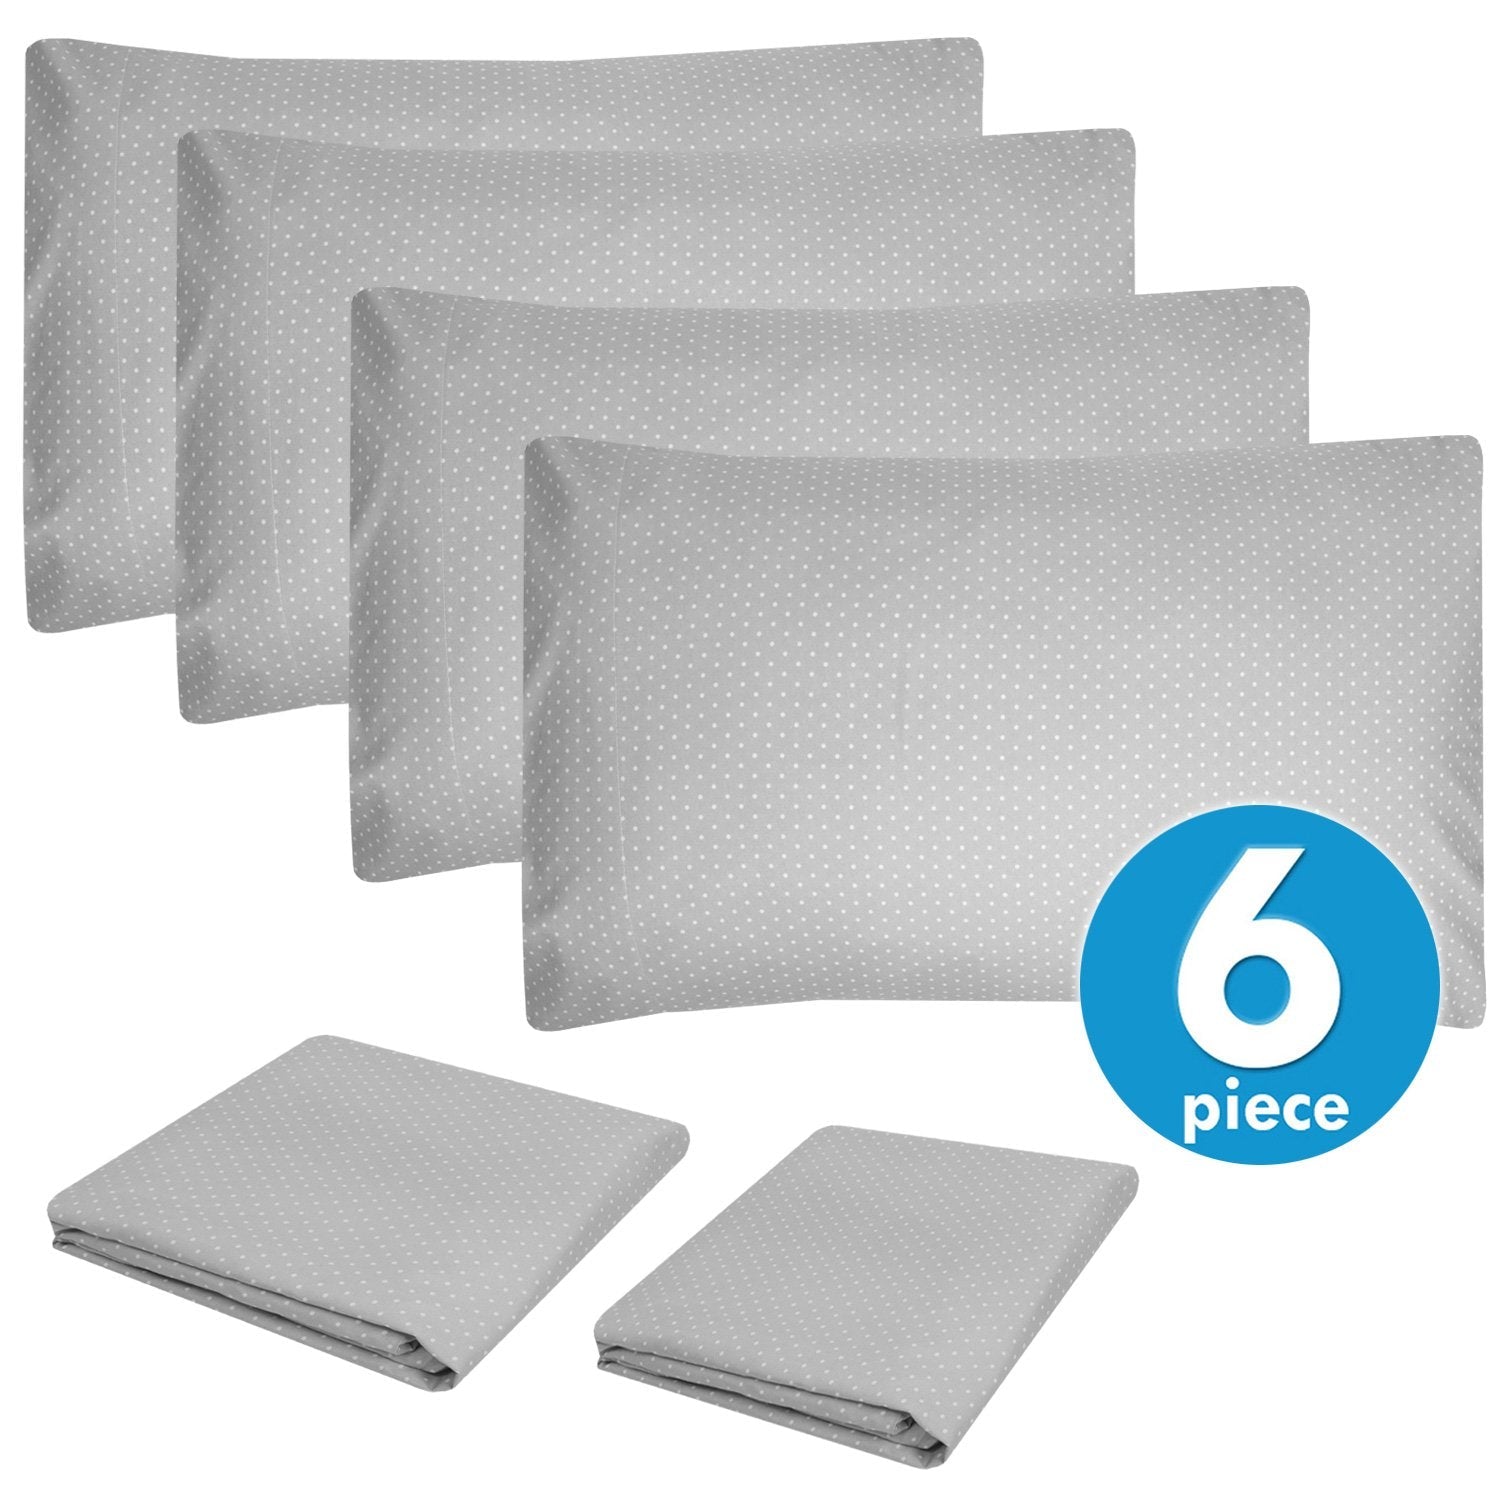 Deluxe 6-Piece Bed Sheet Set (Loft Dot Gray) - Set